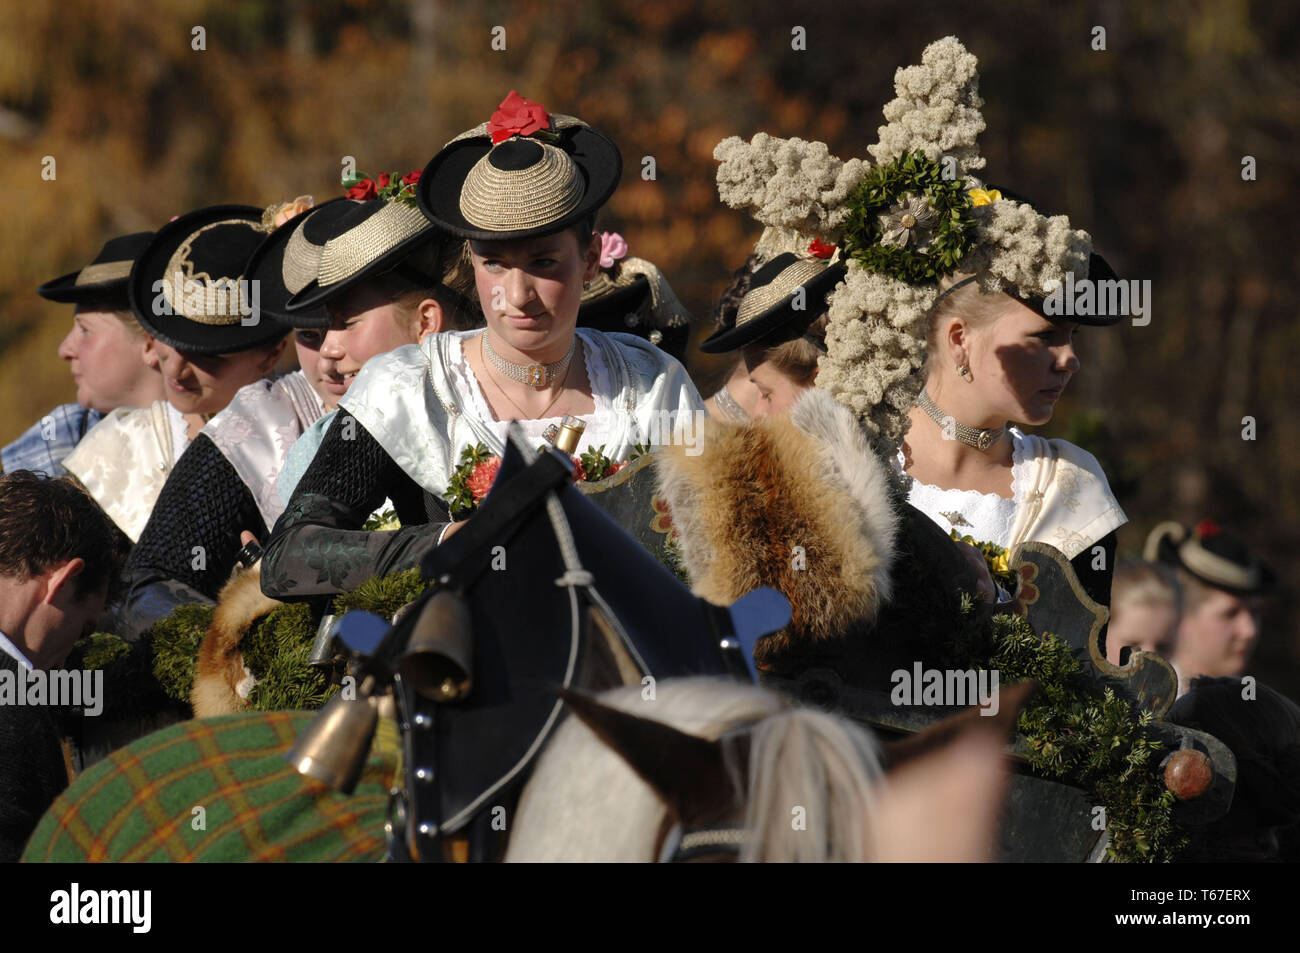 Leonhardiritt Leonhardifahrt o, una procesión con garbs, una tradición de Baviera, en el sur de Alemania Foto de stock